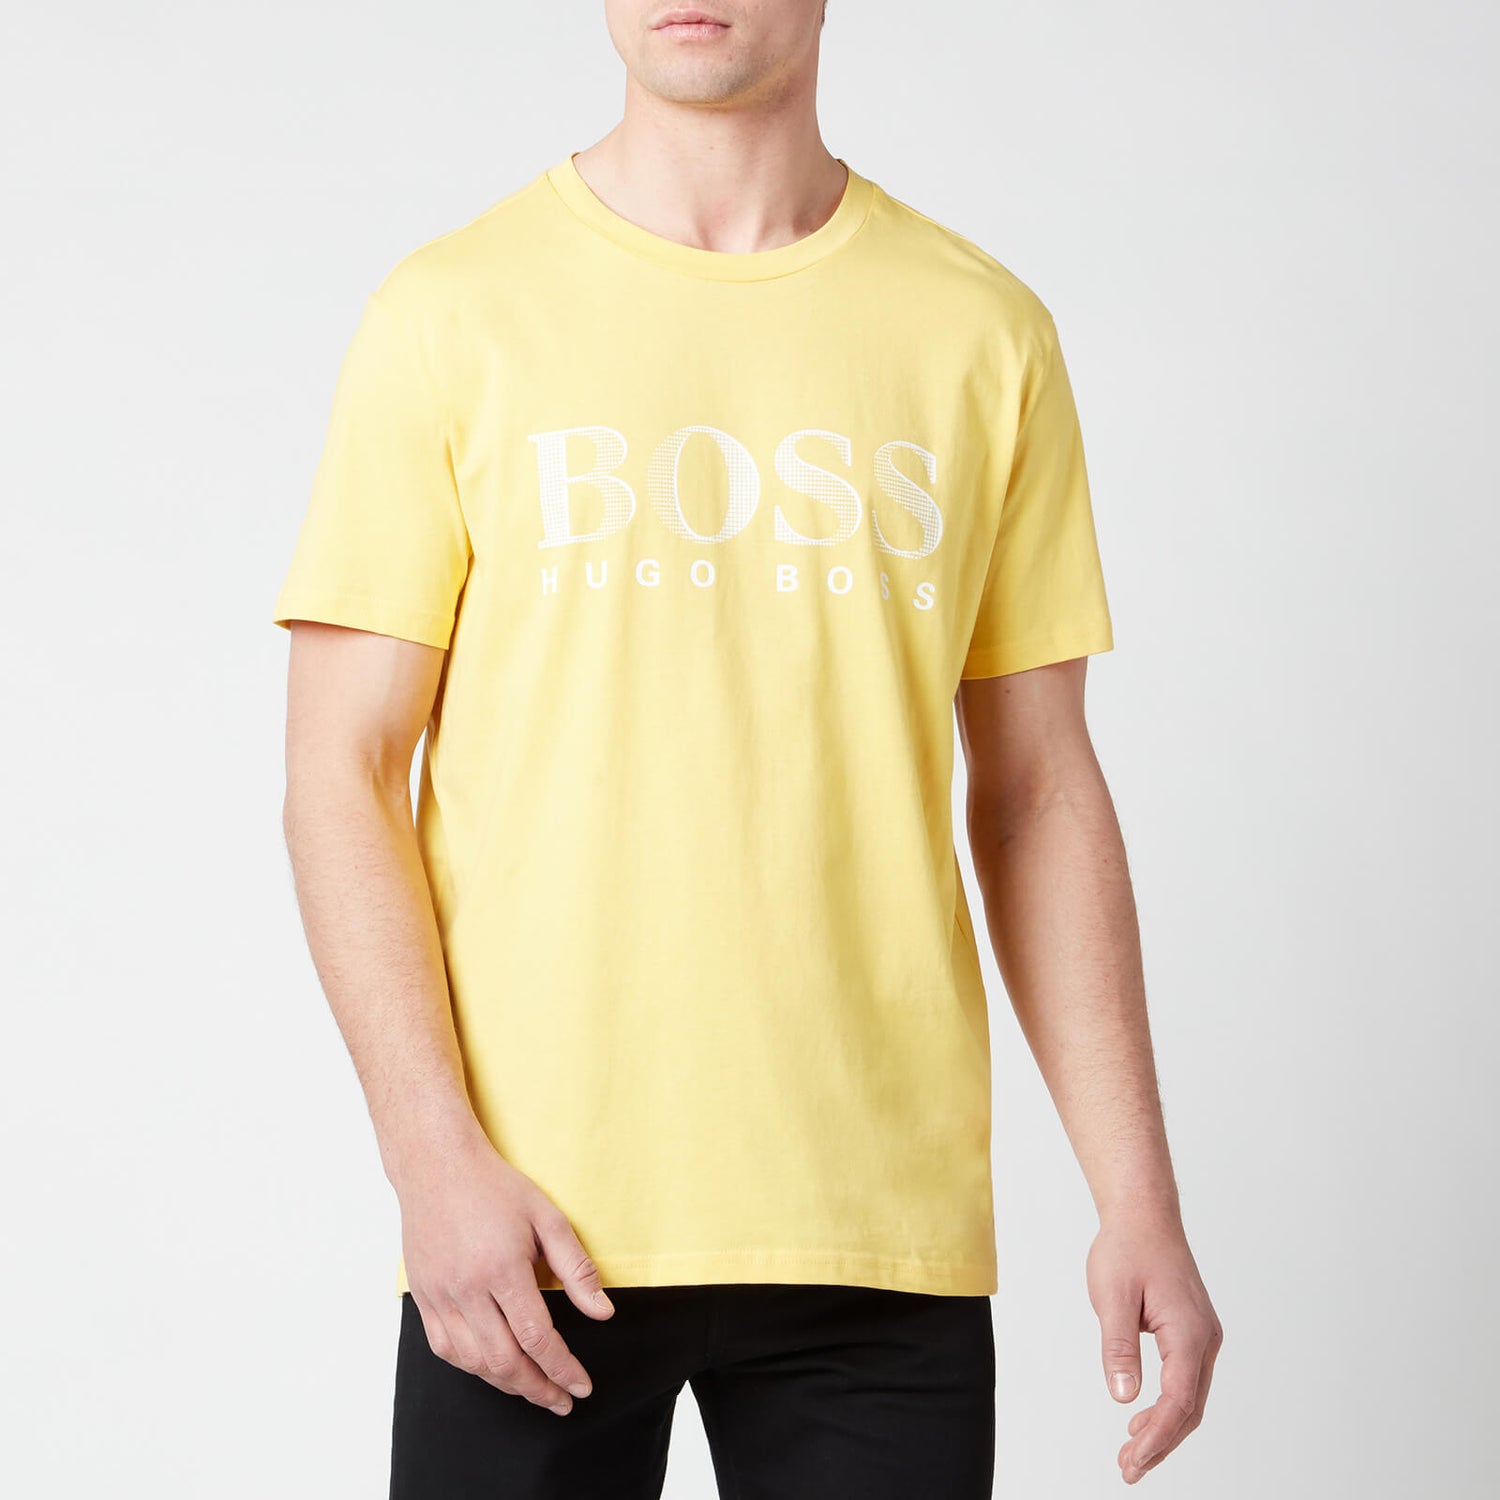 BOSS Beachwear Men's Relaxed Fit Upf 50+ T-Shirt - Yellow